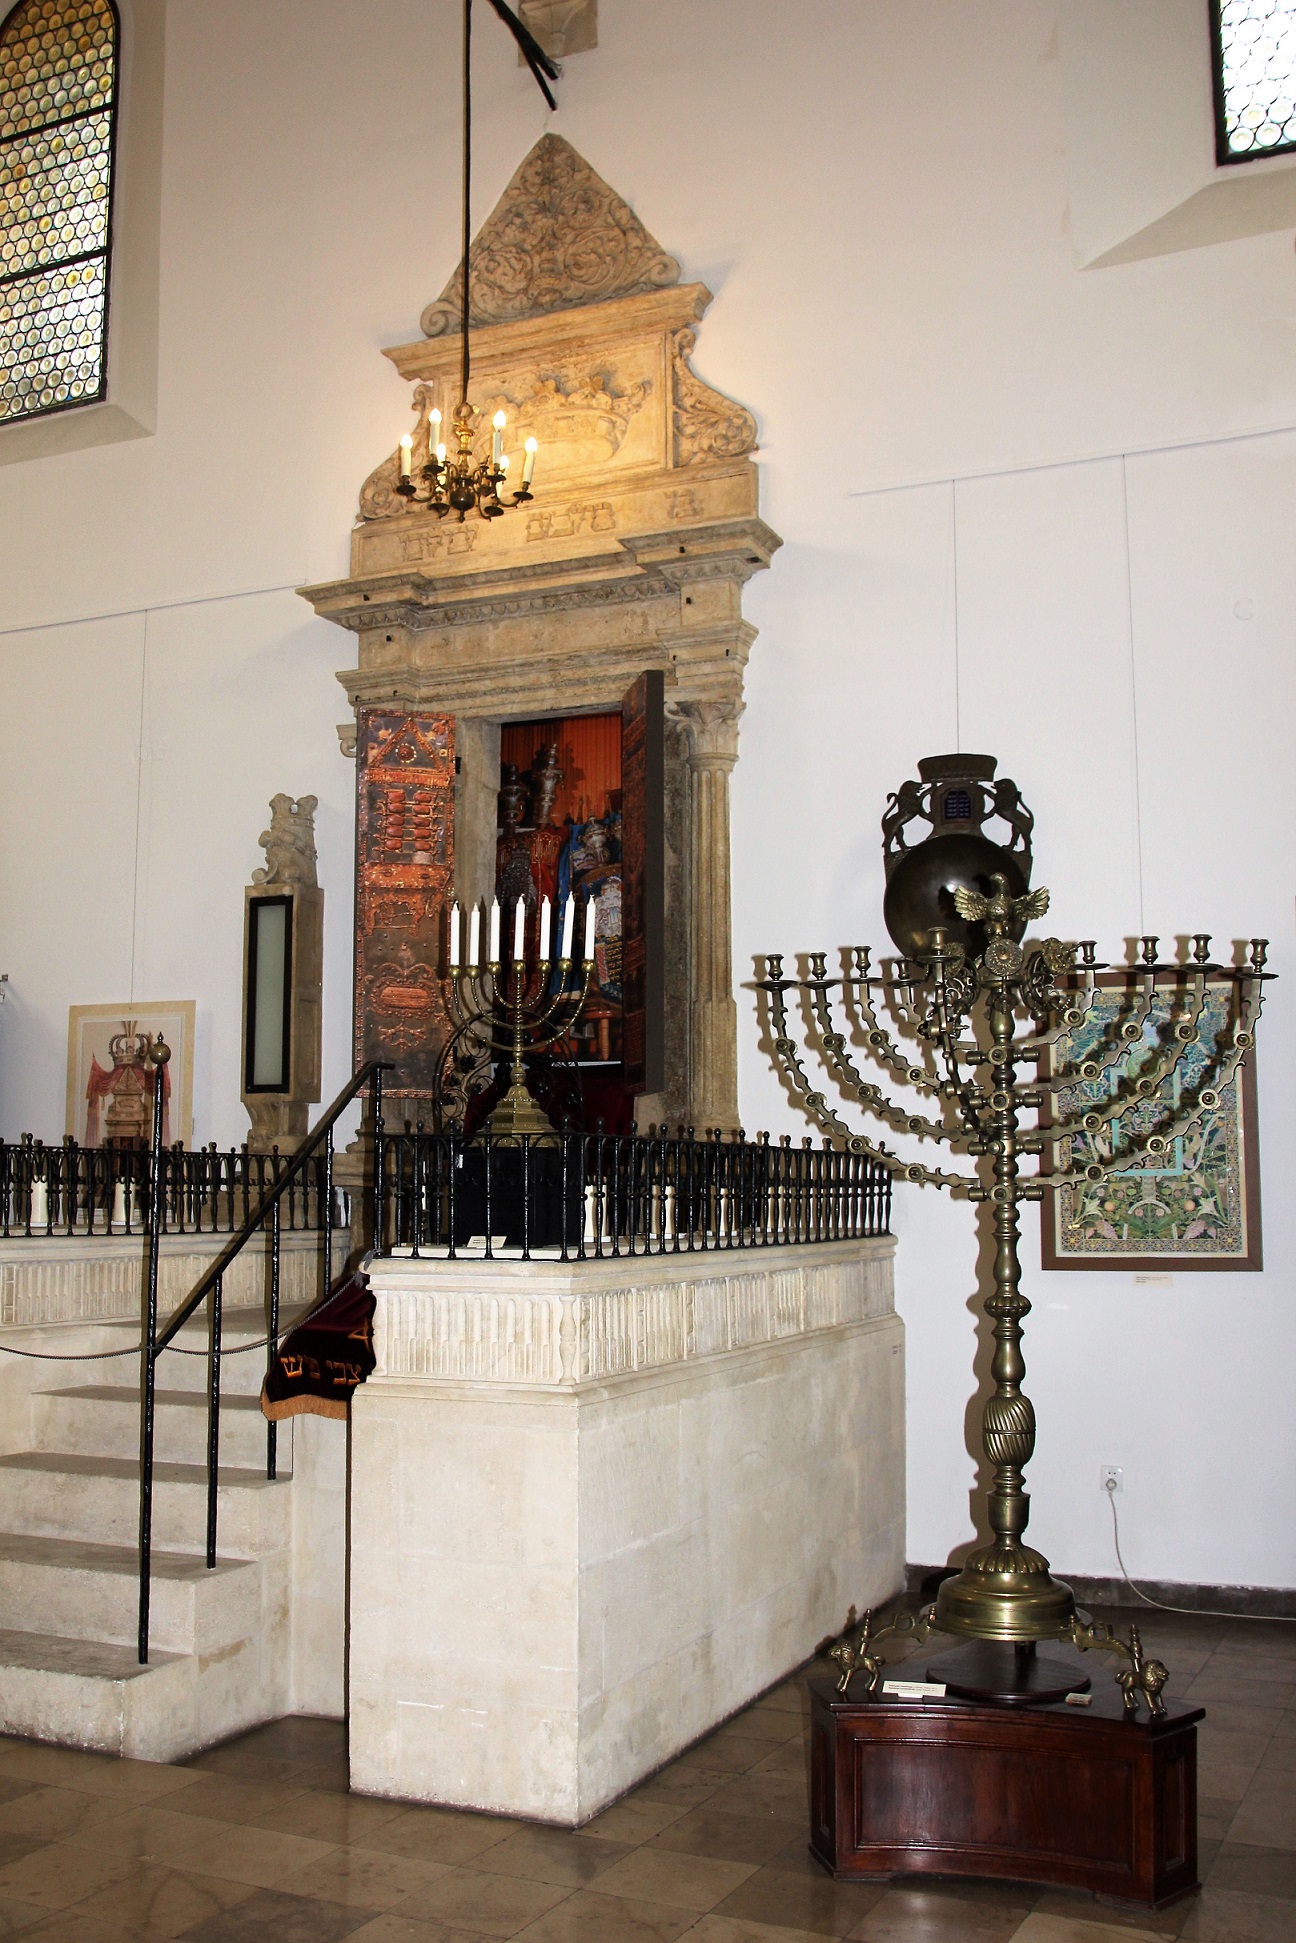 Oude synagoge - Zevenarmige kandelaar naast een trapje naar een heiligdom.